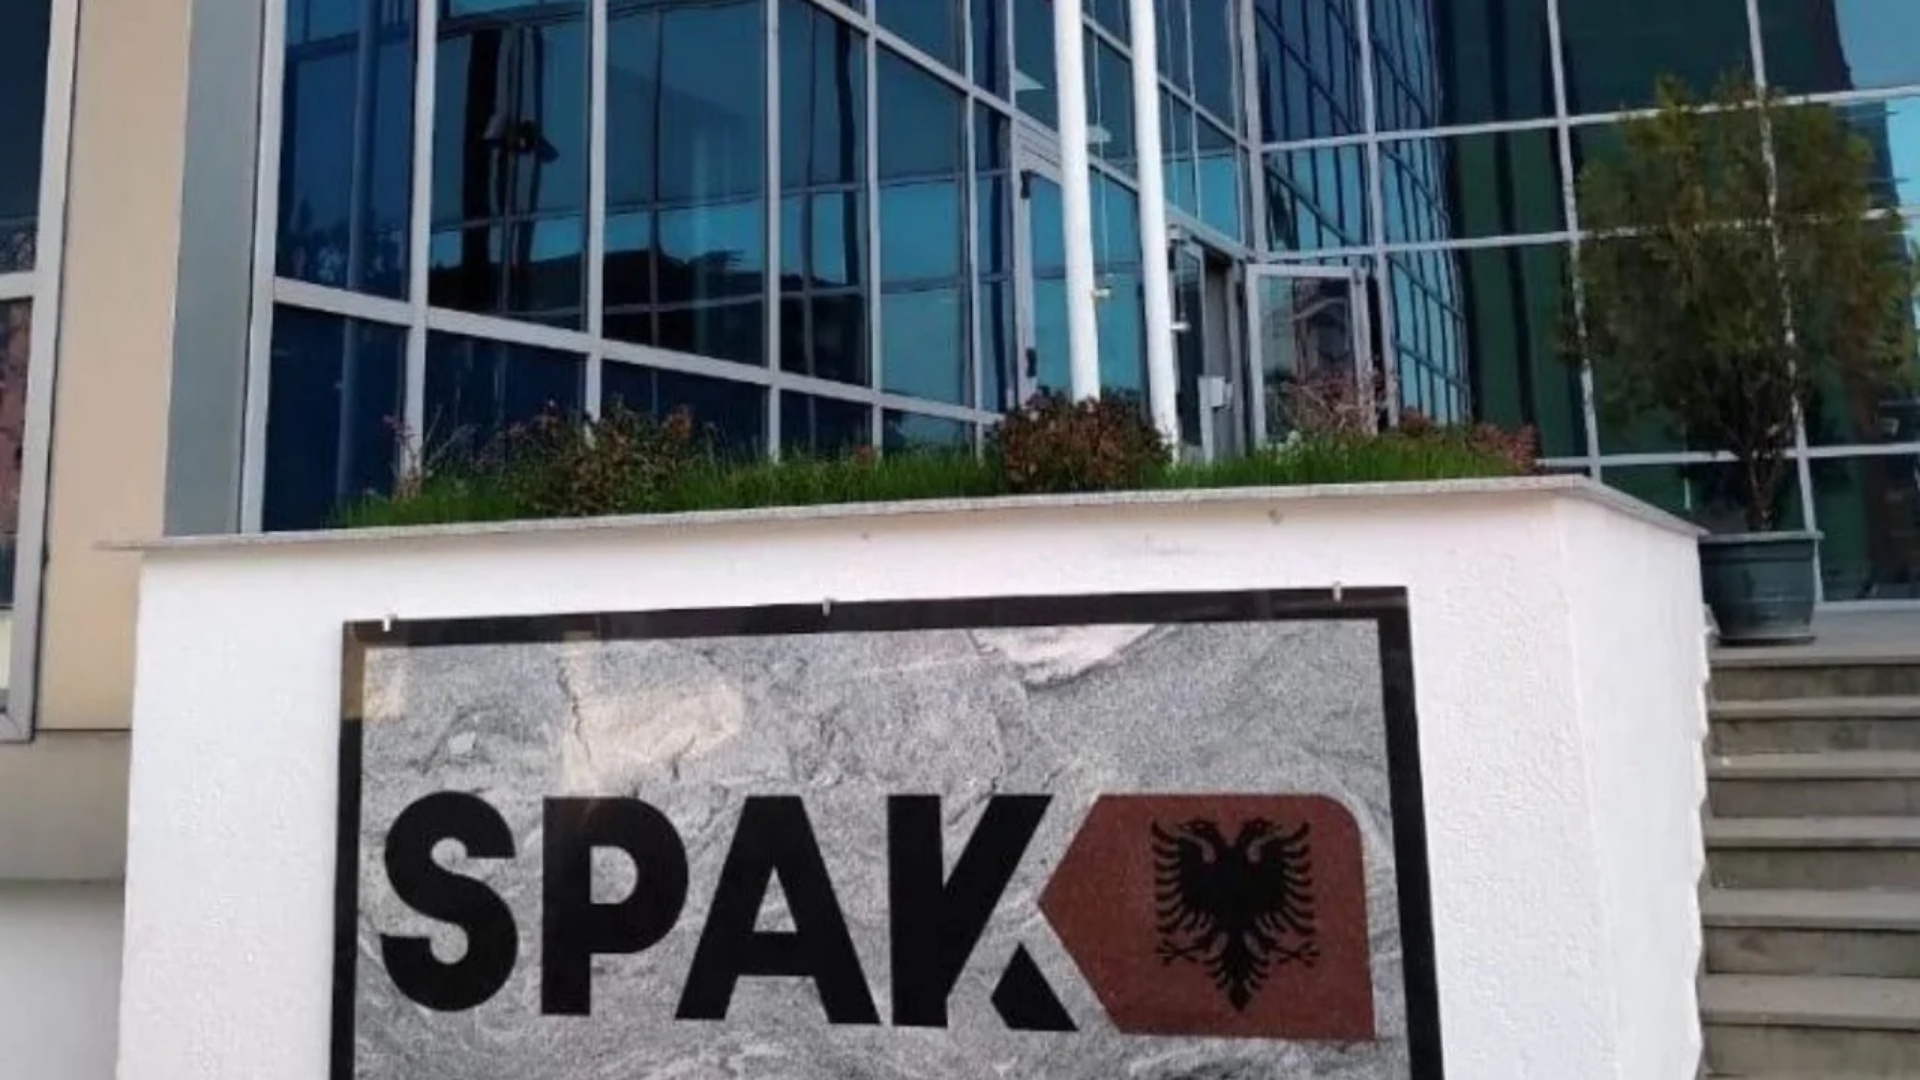 Nga apartamentet te 10 llogaritë bankare dhe mjetet luksoze, SPAK konfiskon rreth 1.2 mln euro pasuri të Flamur Sinanajt!